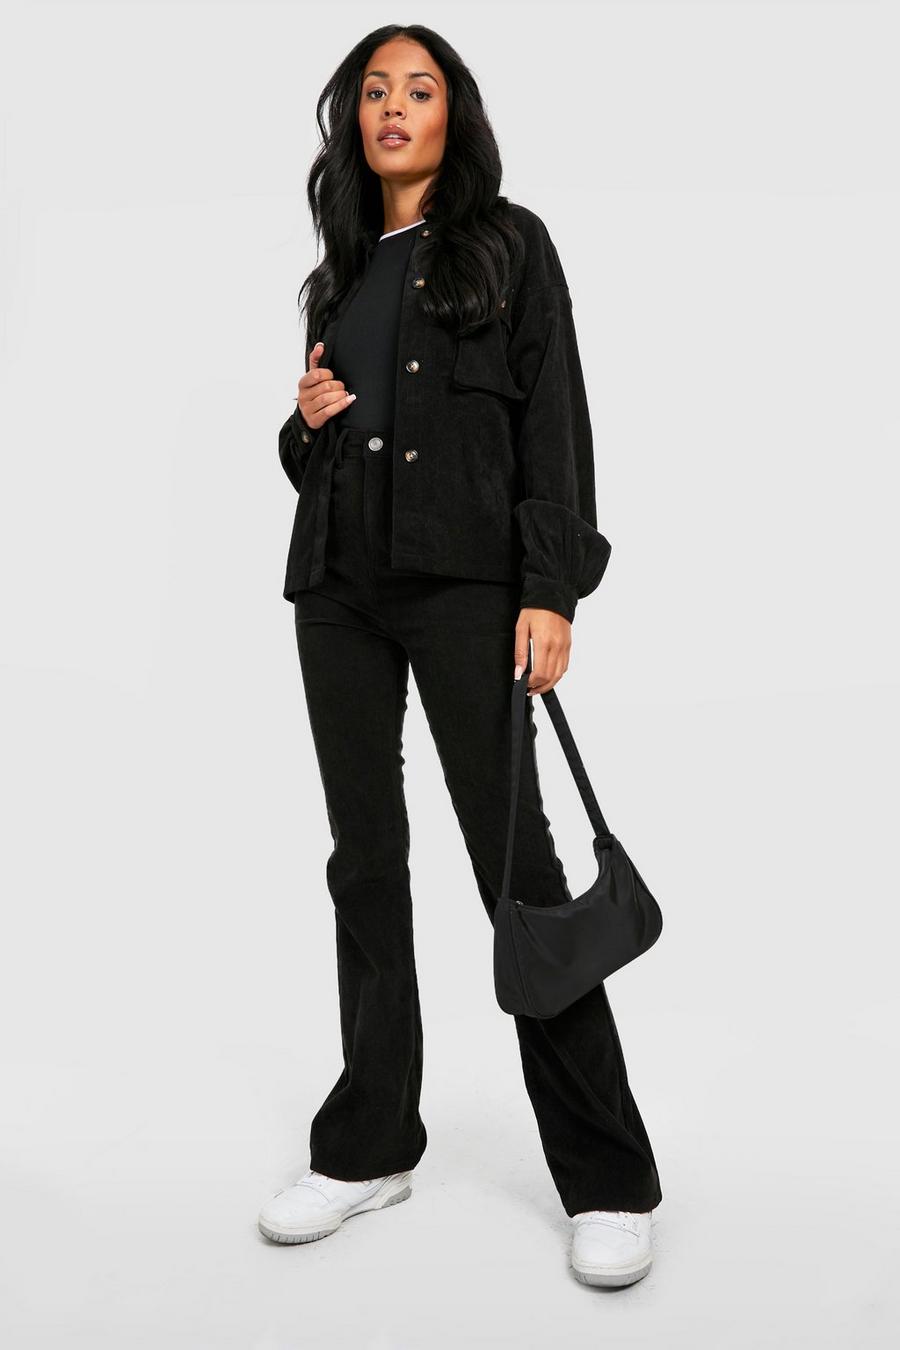 שחור מכנסי קורדרוי מתרחבים עם מותניים גבוהים, לנשים גבוהות